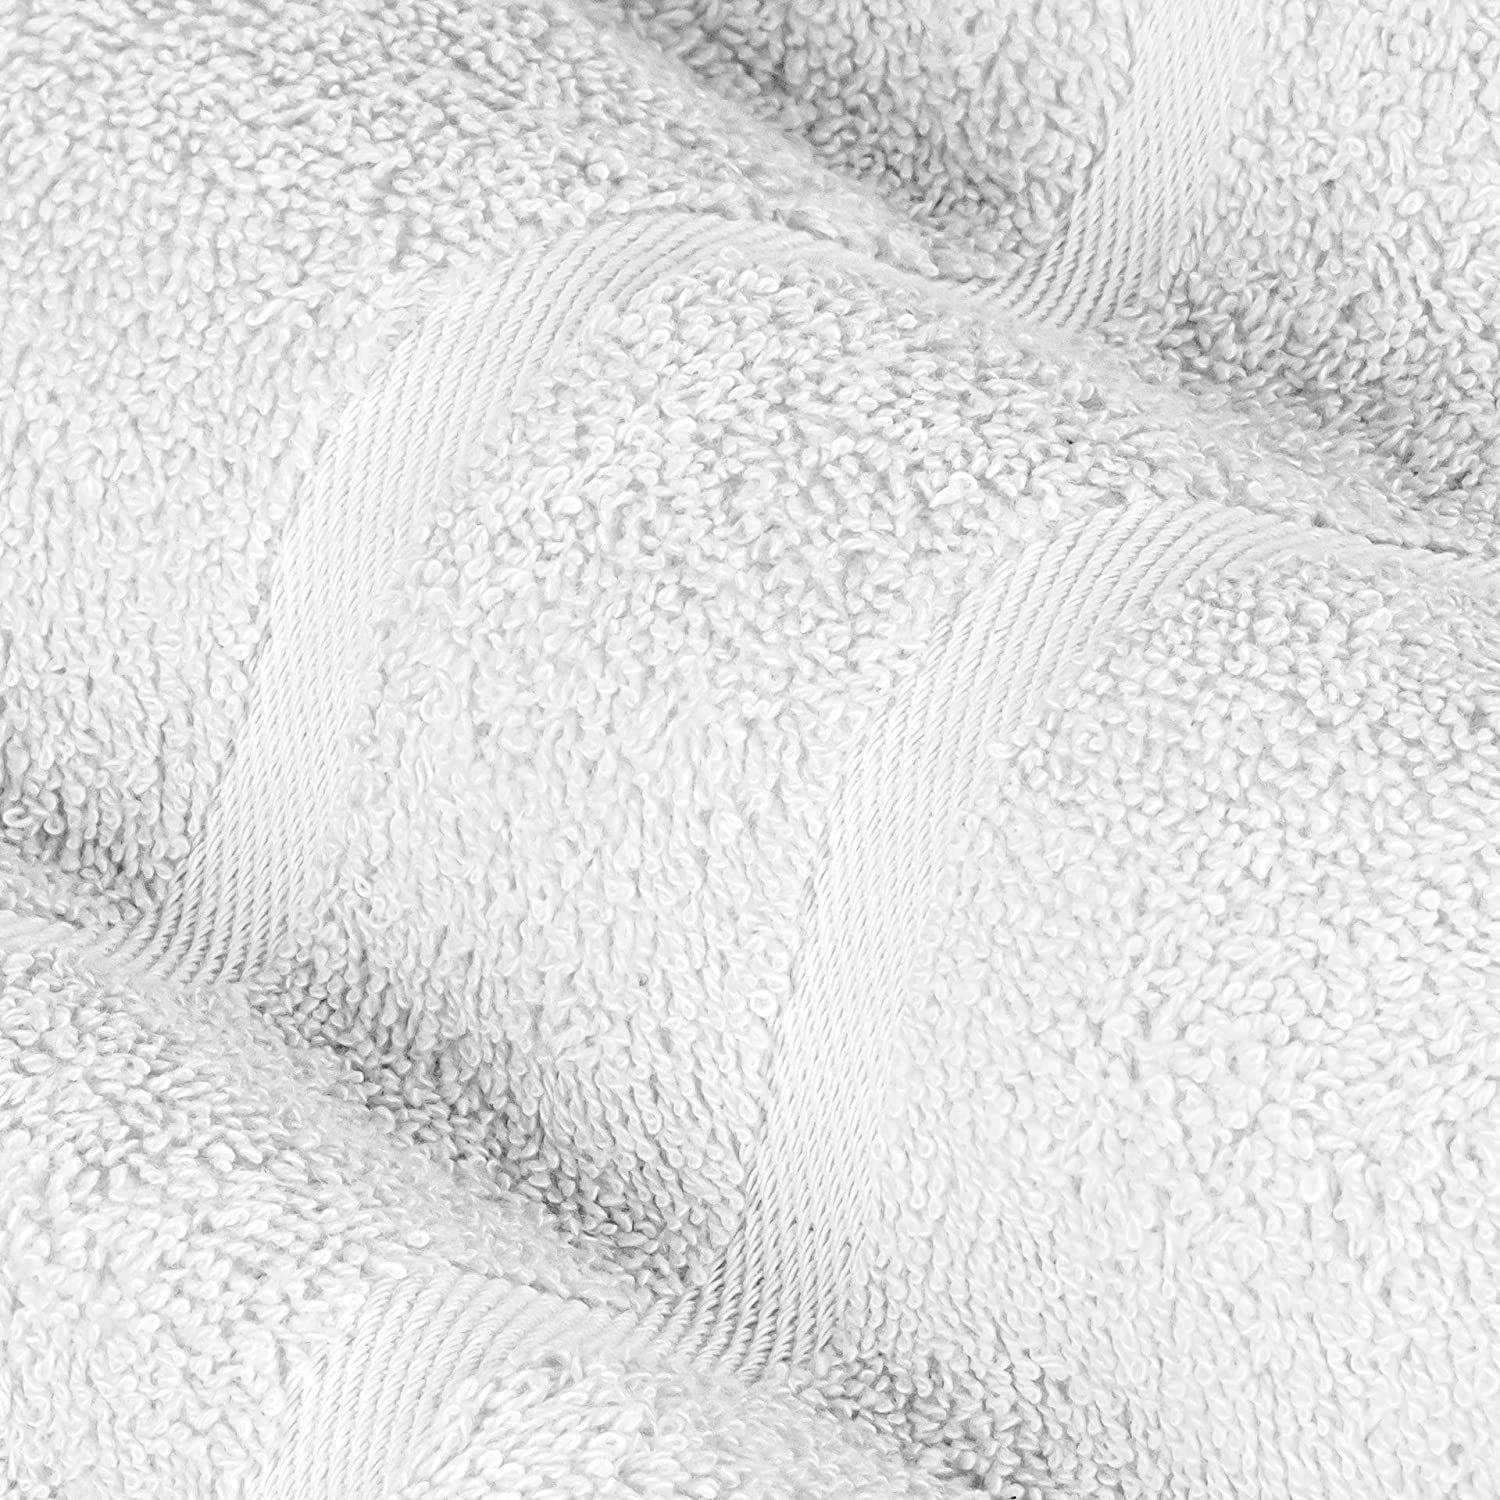 StickandShine Handtuch Set Frottee Handtuch Weiß Teilig) Saunatuch 1x GSM in GSM Badetuch Pack, (6 Baumwolle Baumwolle Duschtuch 500 6er 1x Handtuch Gästehandtuch 1x 100% 1x SET 1x 100% Waschlappen als verschiedenen 500 Farben 1x